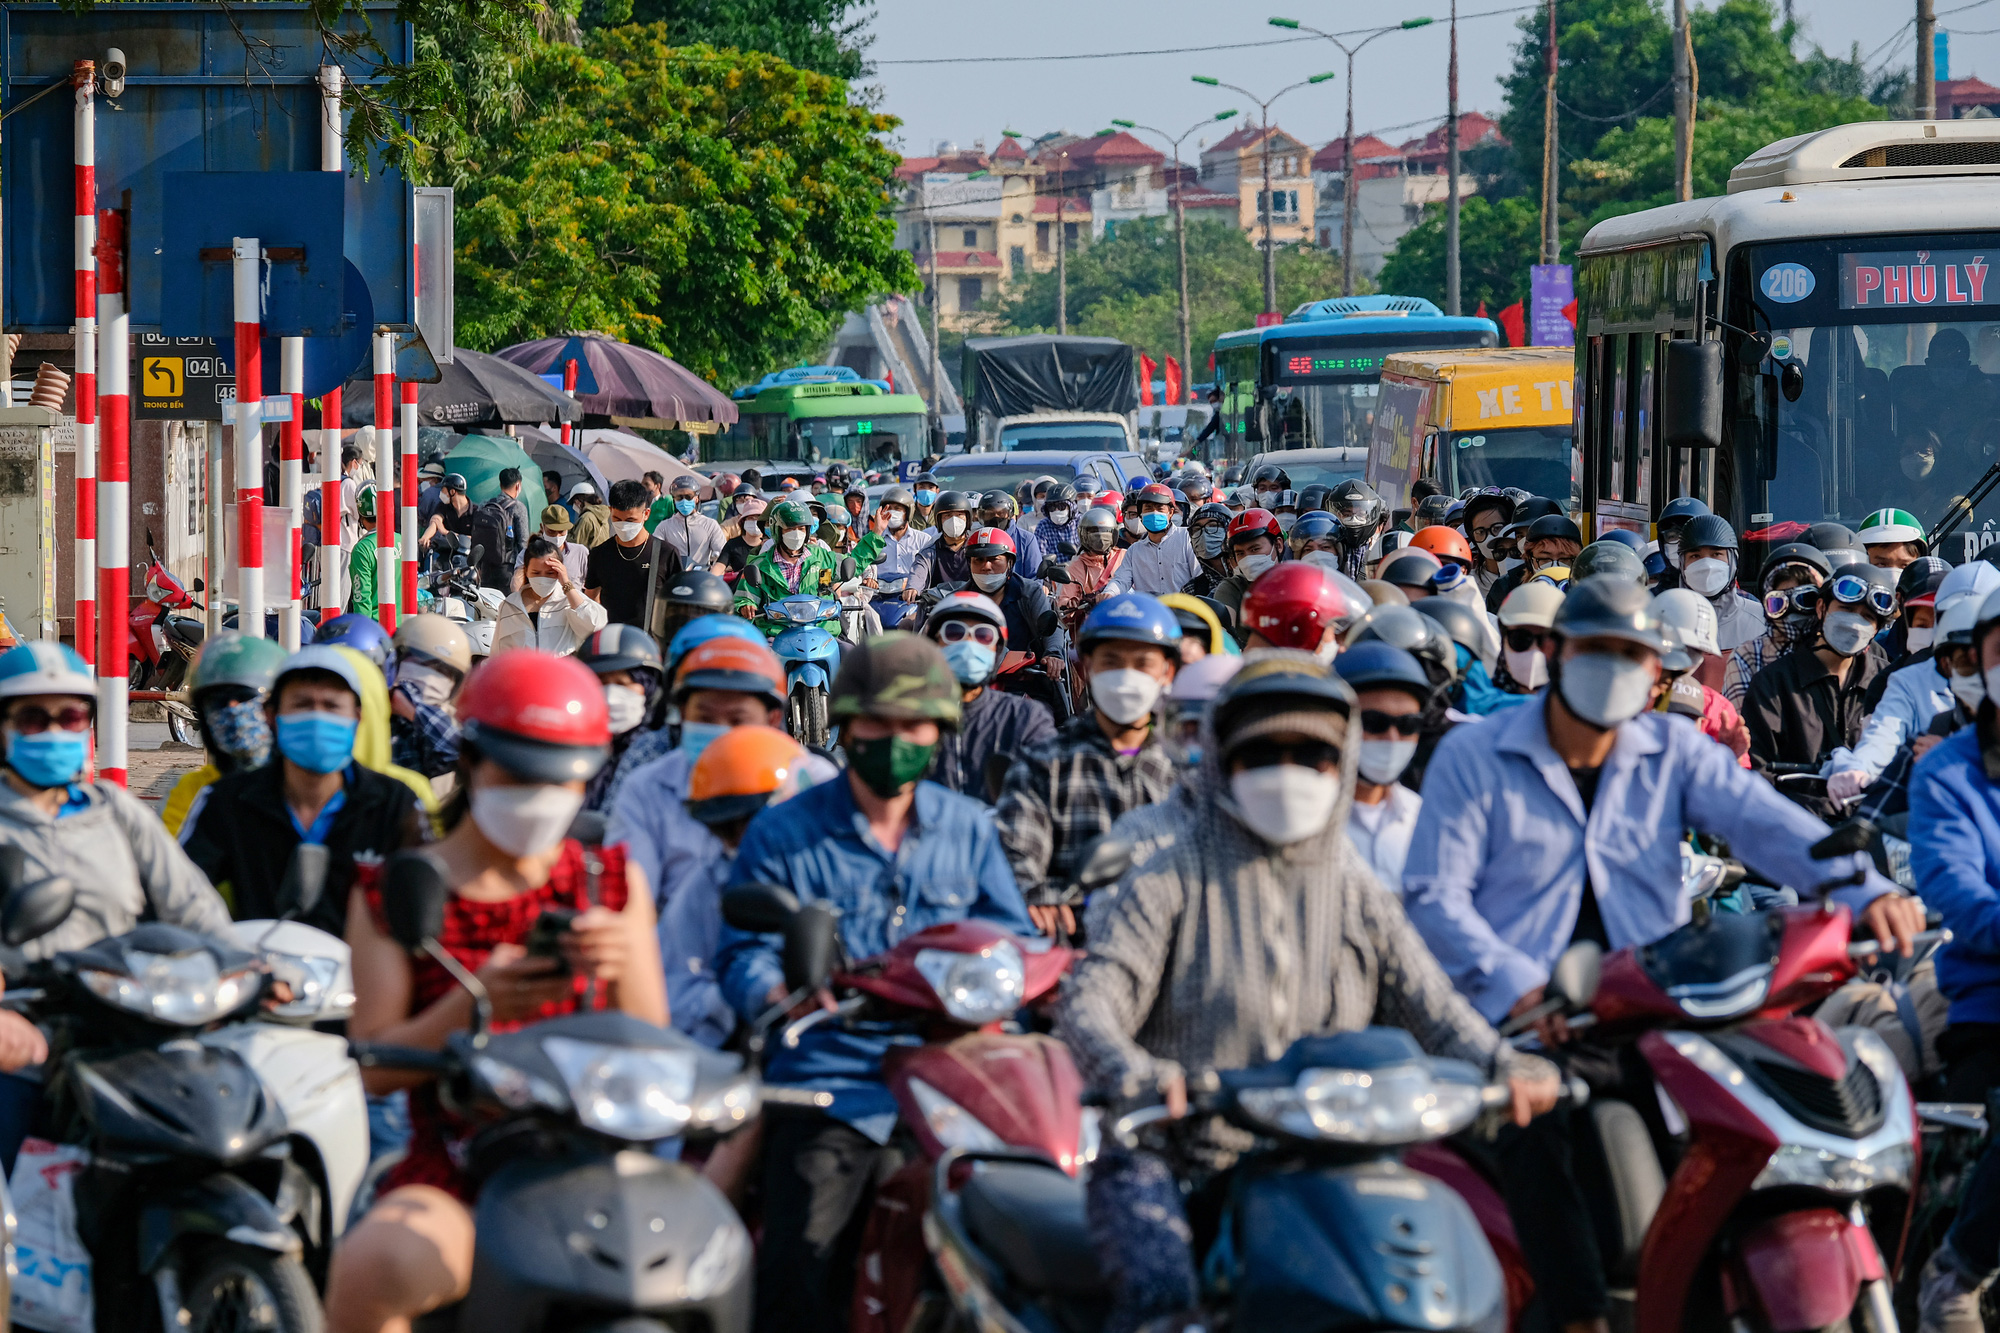 Người dân ùn ùn quay trở lại Hà Nội dù chưa kết thúc kỳ nghỉ lễ vì nỗi sợ tắc đường, giao thông khu vực cửa ngõ ùn ứ-1